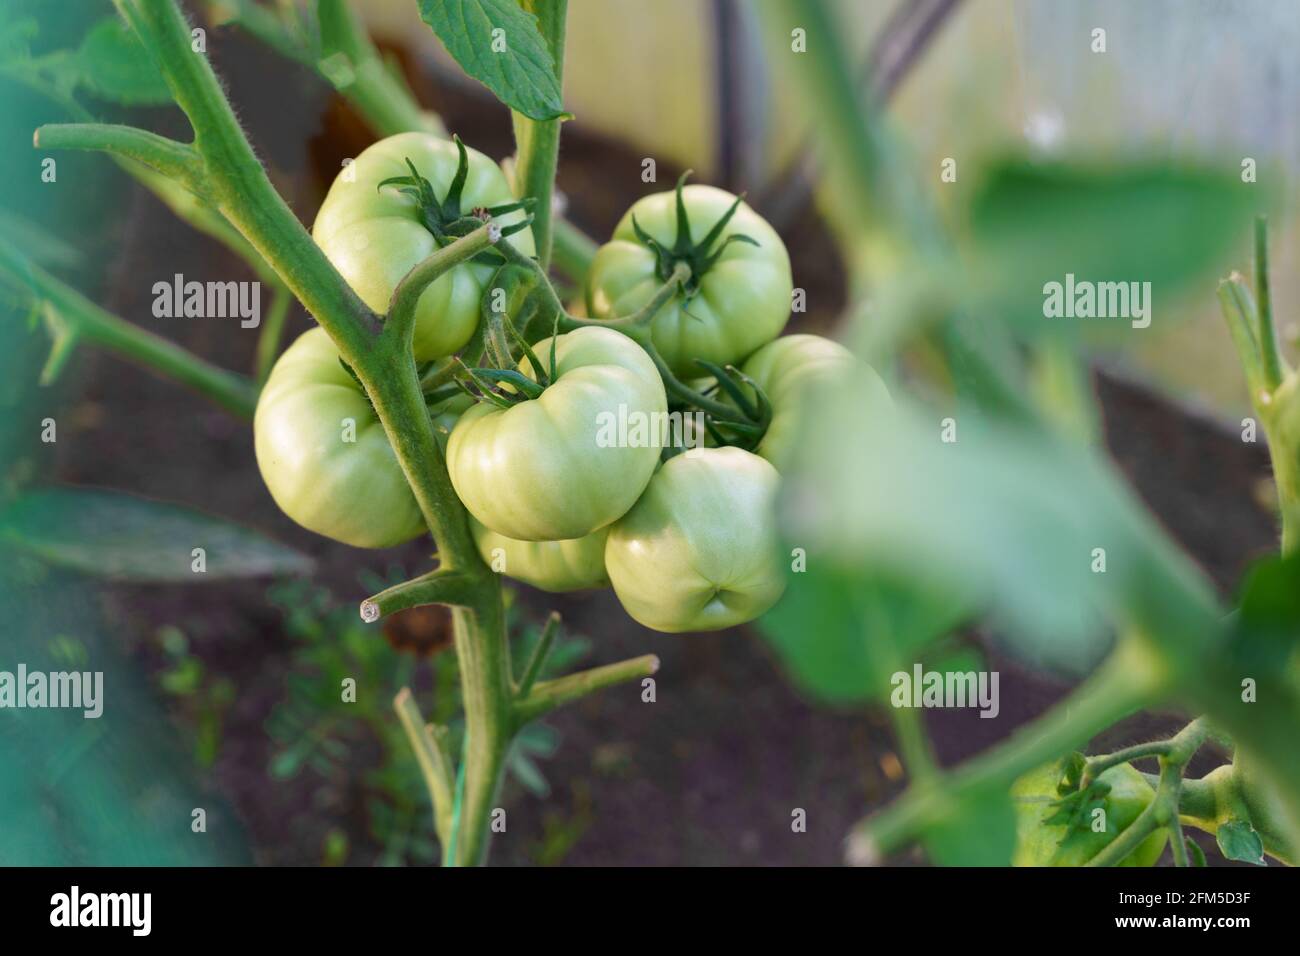 Pomodori verdi che crescono sul ramo con foglie verdi giardinaggio Foto Stock